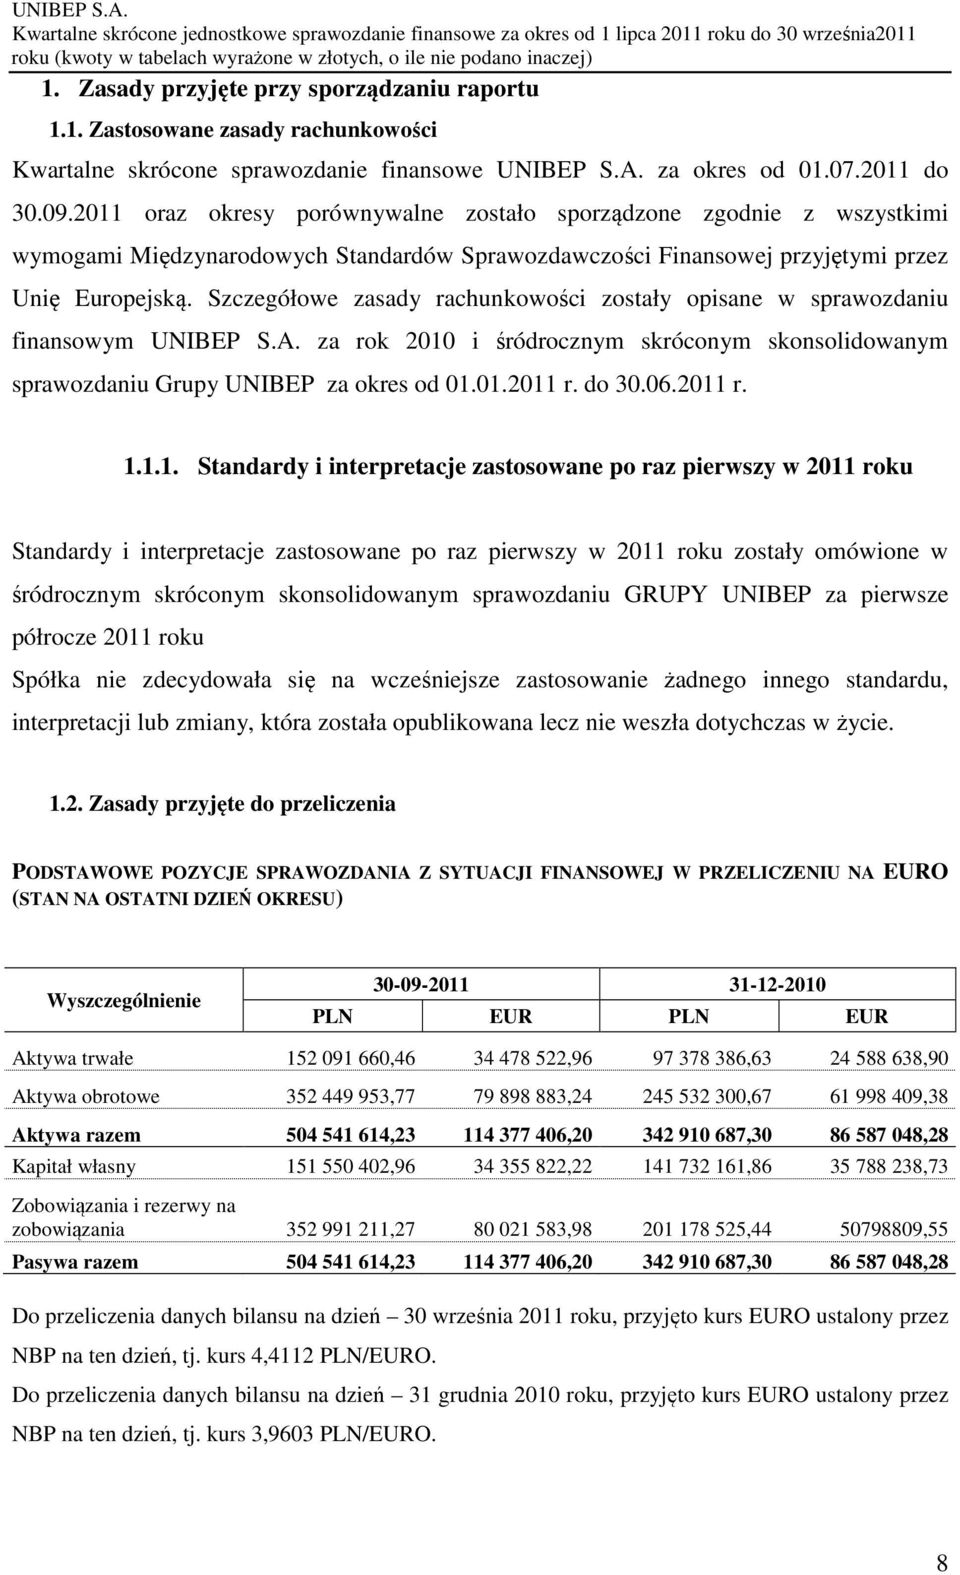 Szczegółowe zasady rachunkowości zostały opisane w sprawozdaniu finansowym UNIBEP S.A. za rok 2010 i śródrocznym skróconym skonsolidowanym sprawozdaniu Grupy UNIBEP za okres od 01.01.2011 r. do 30.06.